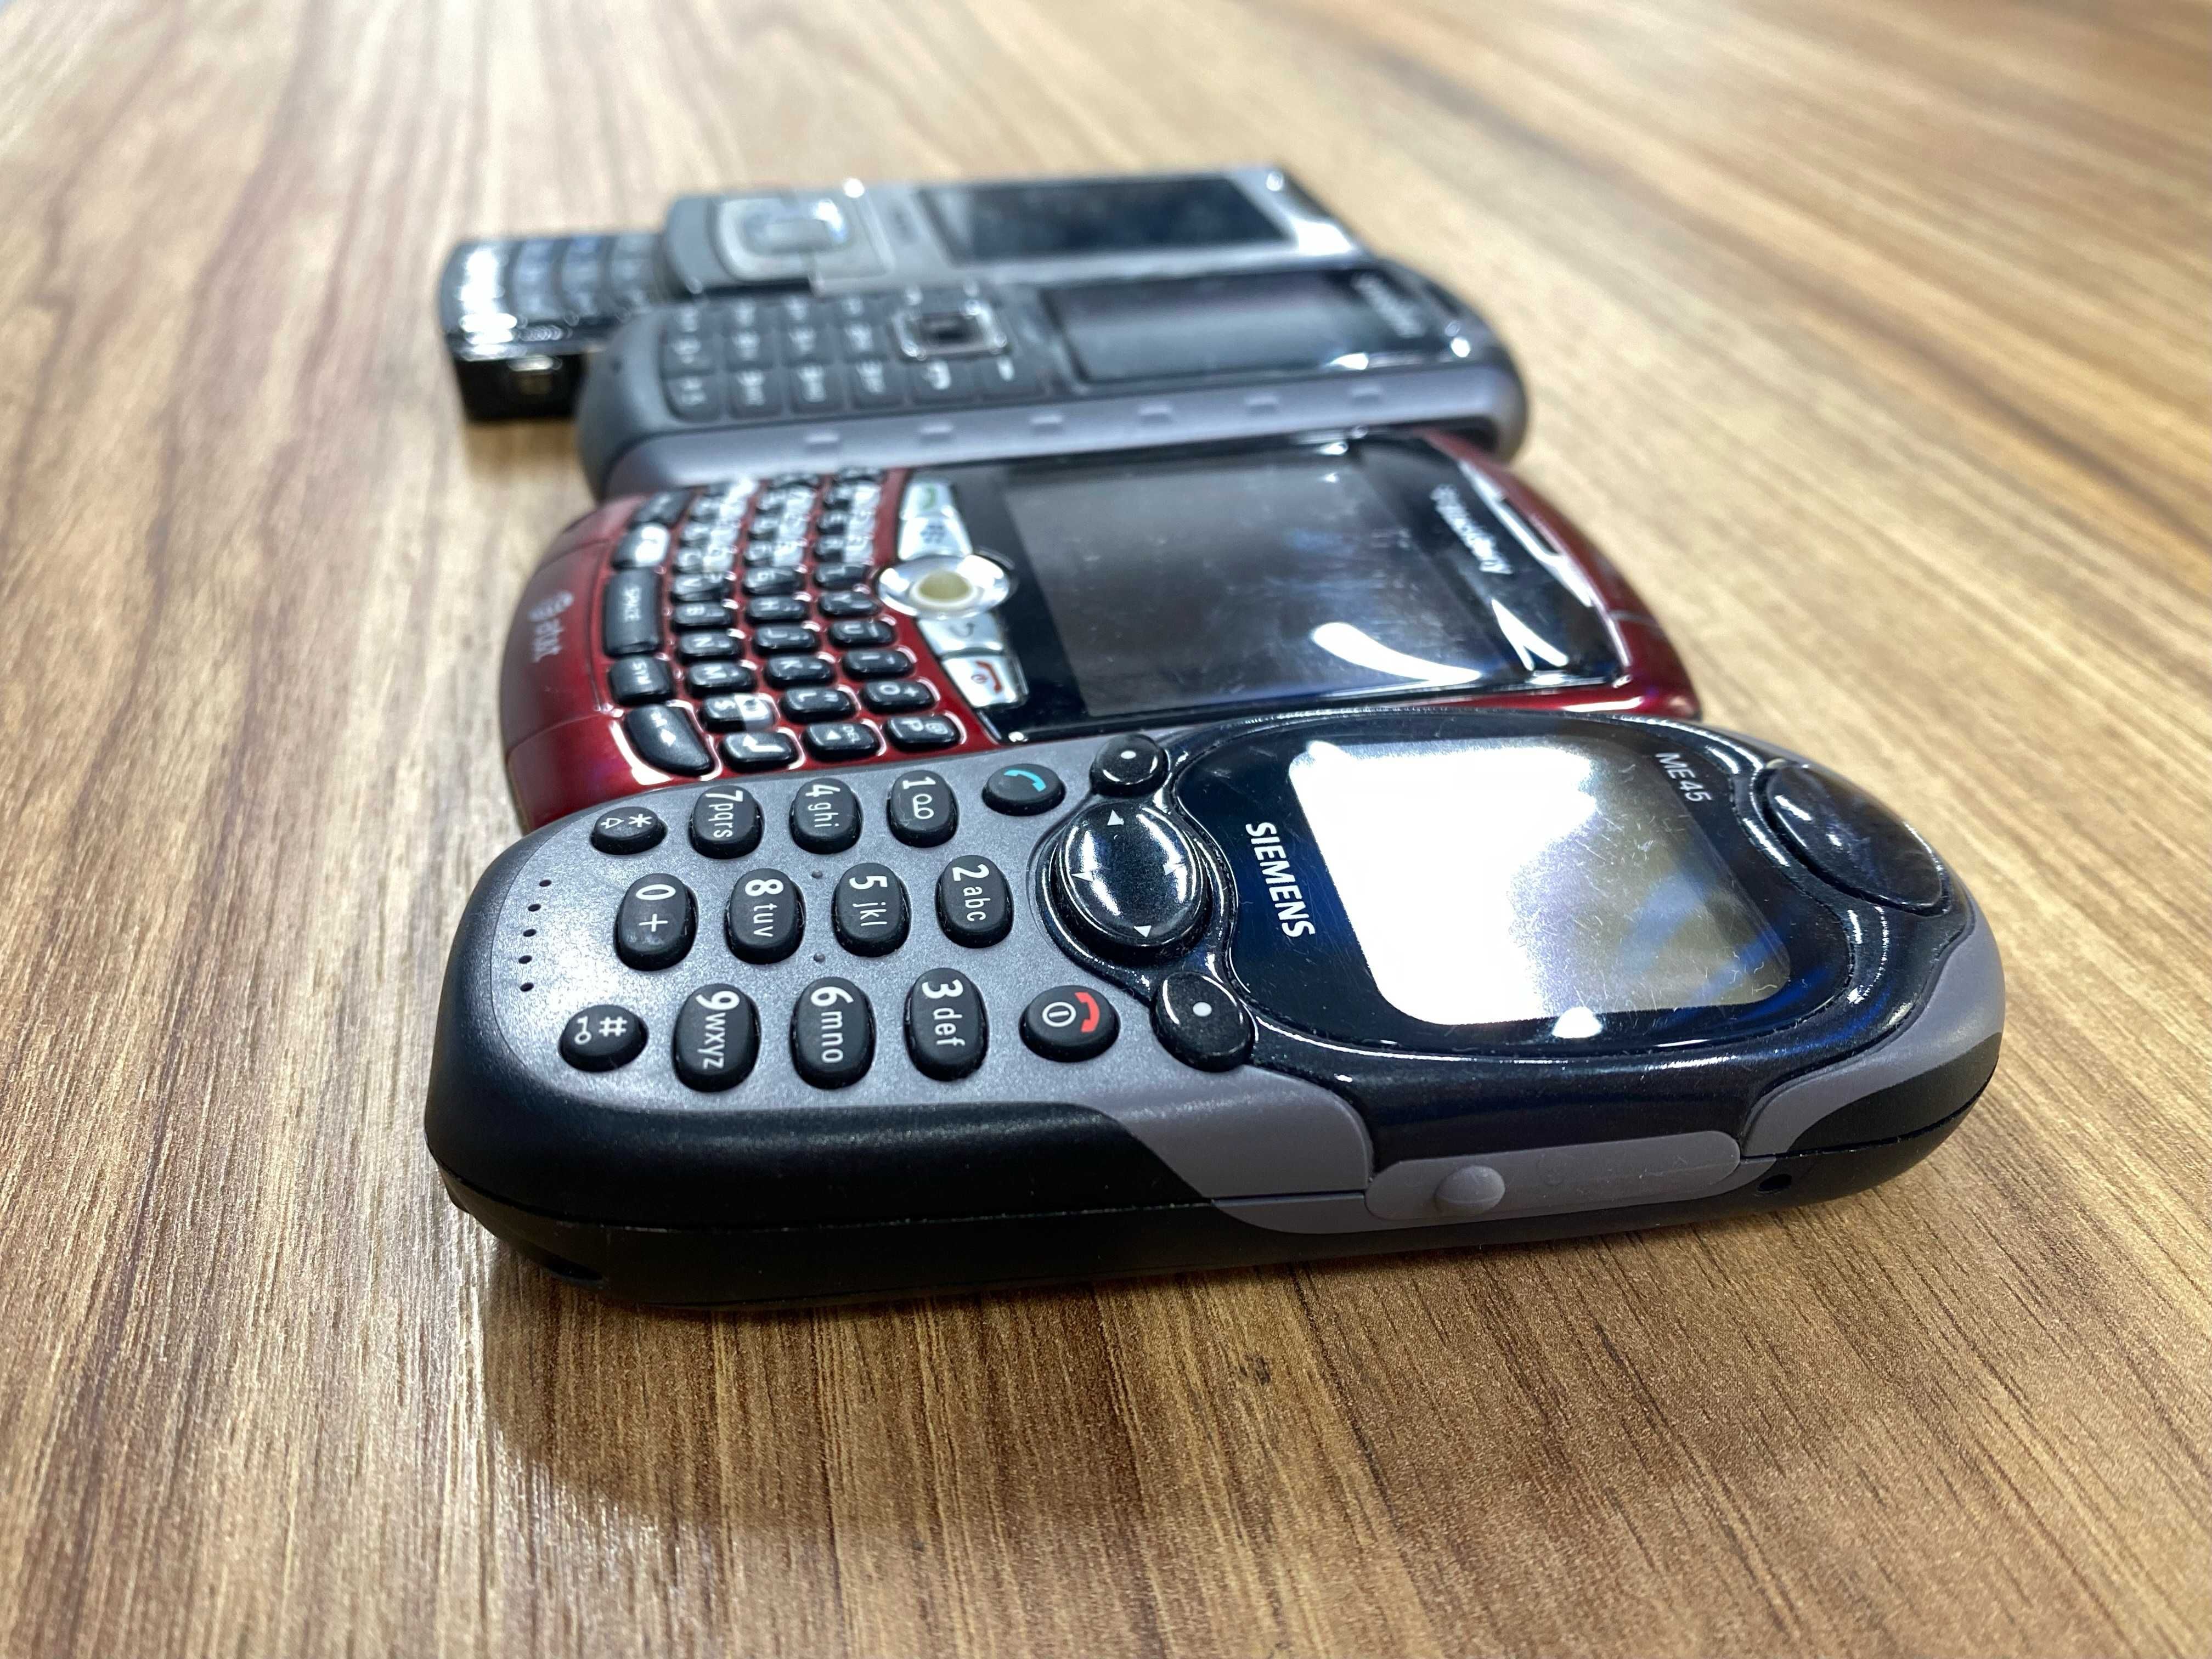 Mix telefonów nokia samsung blackberry siemens uszkodzone, sprawne